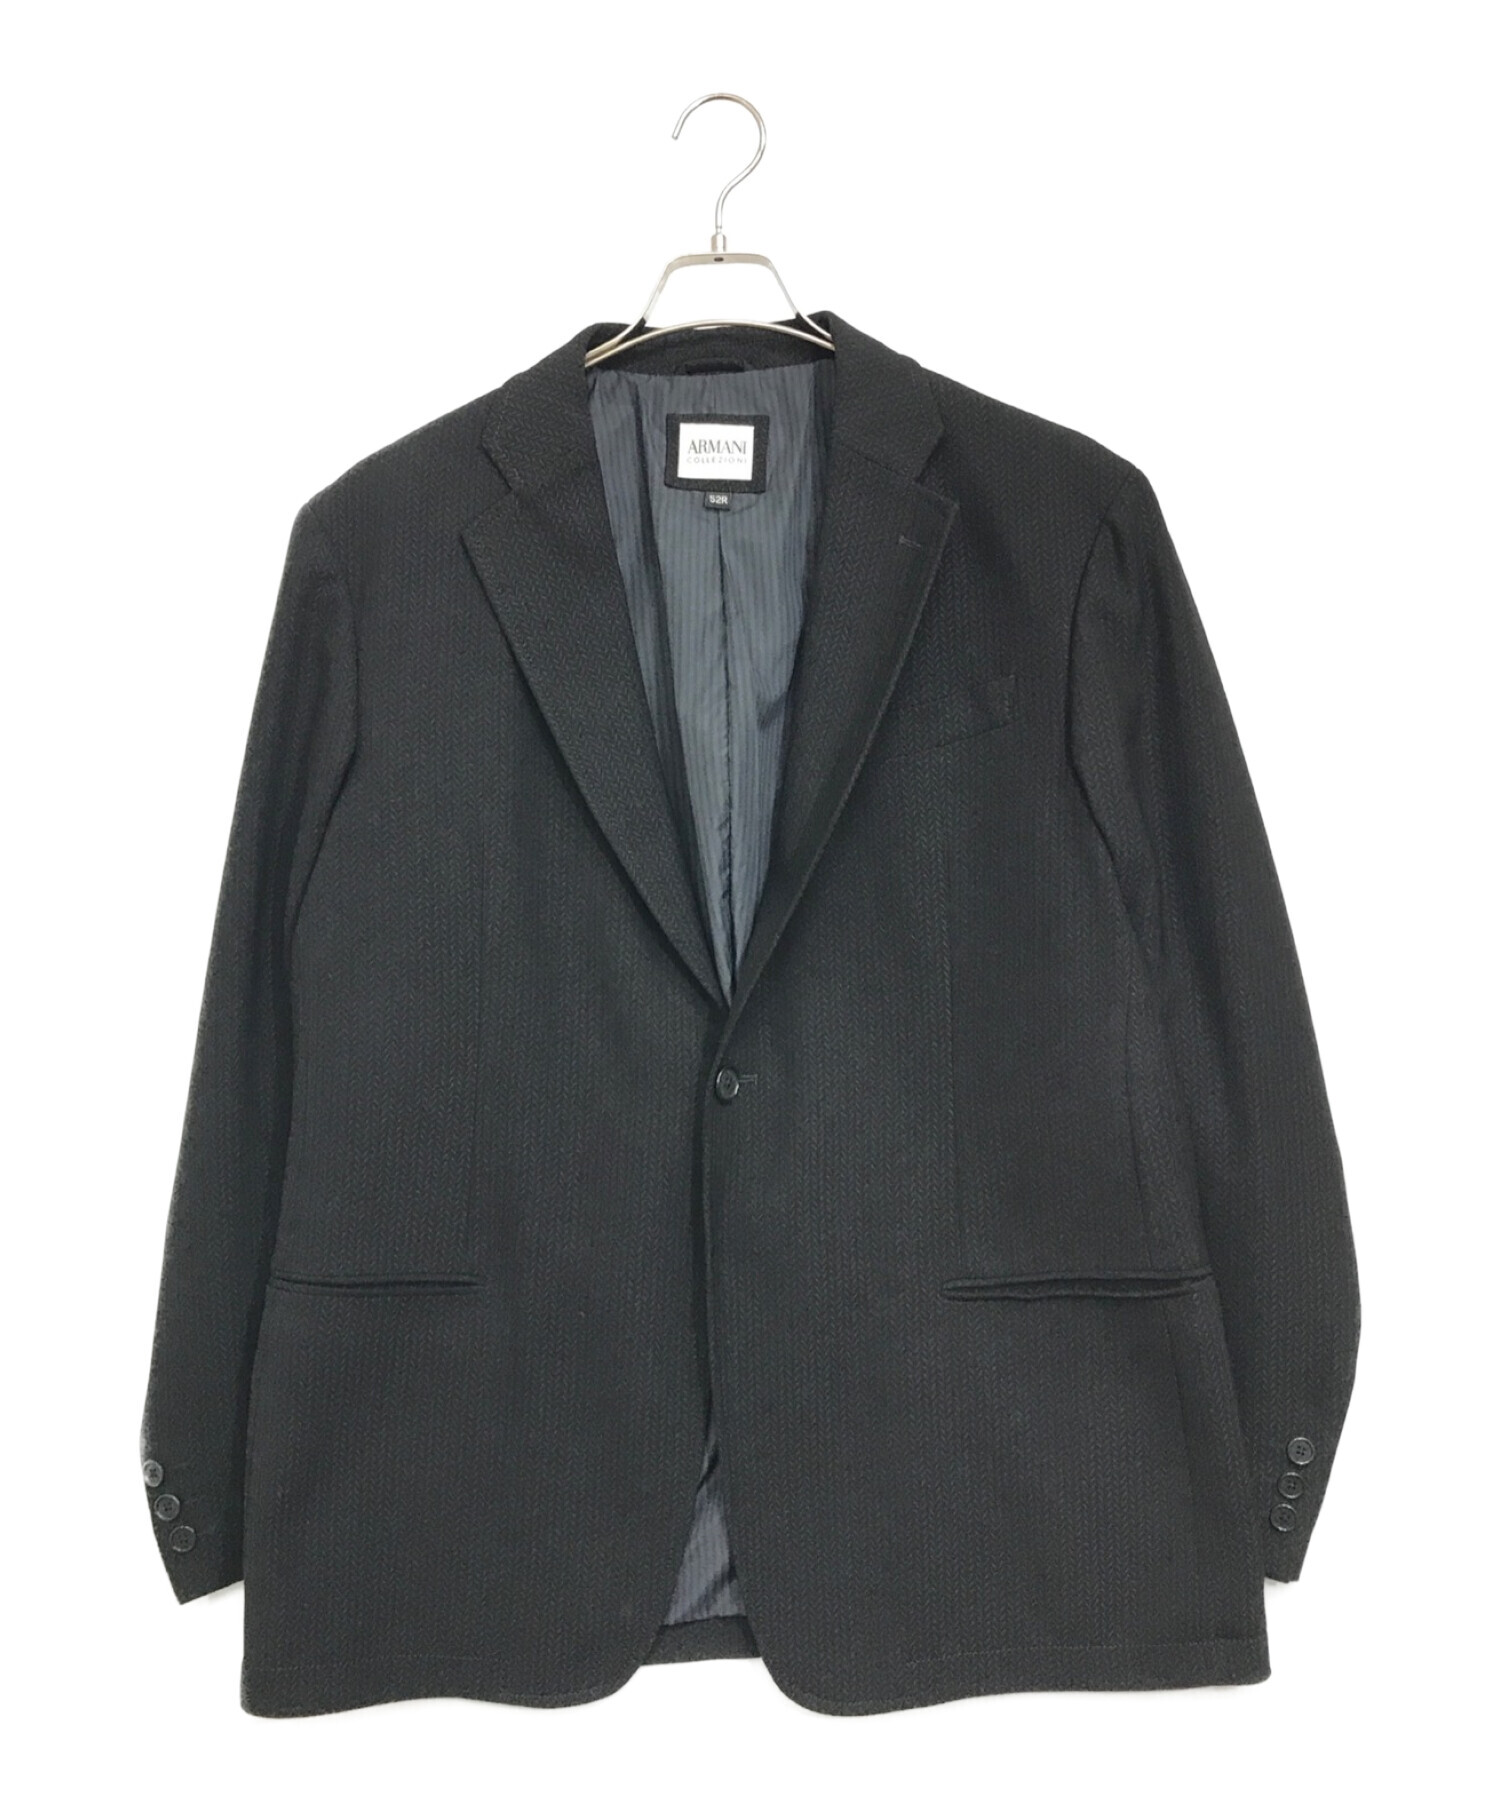 ARMANI COLLEZIONI (アルマーニ コレツィオーニ) ジャージー1Bジャケット ブラック サイズ:52（XL相当）